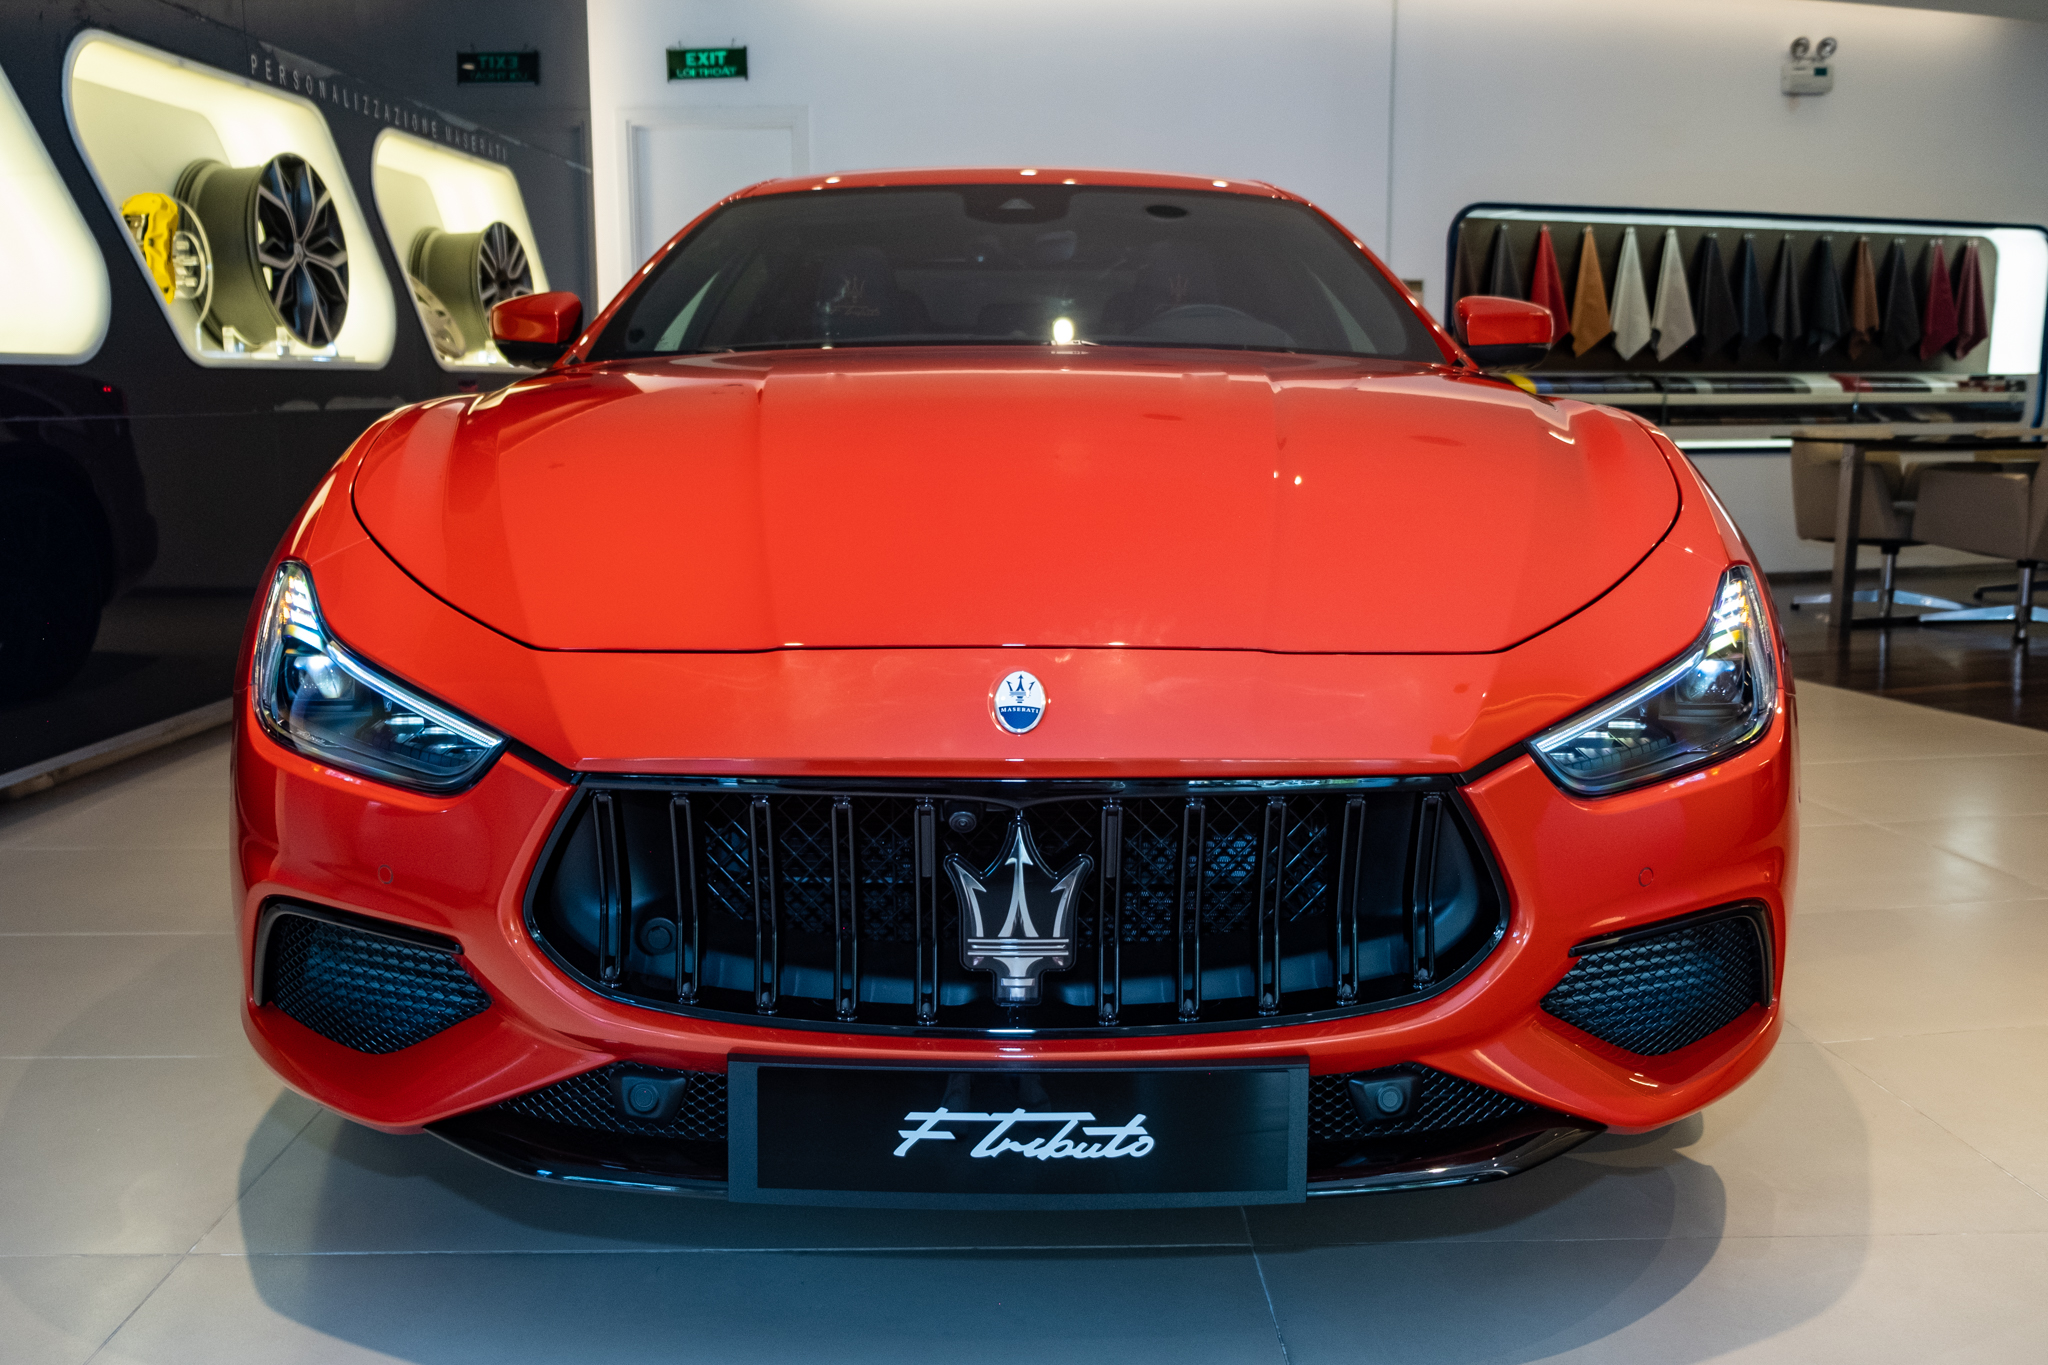 Maserati Ghibli F Tributo độc nhất Việt Nam giá hơn 9 tỷ đồng: Màu sơn độc quyền, máy V6 mạnh 430 mã lực - Ảnh 2.